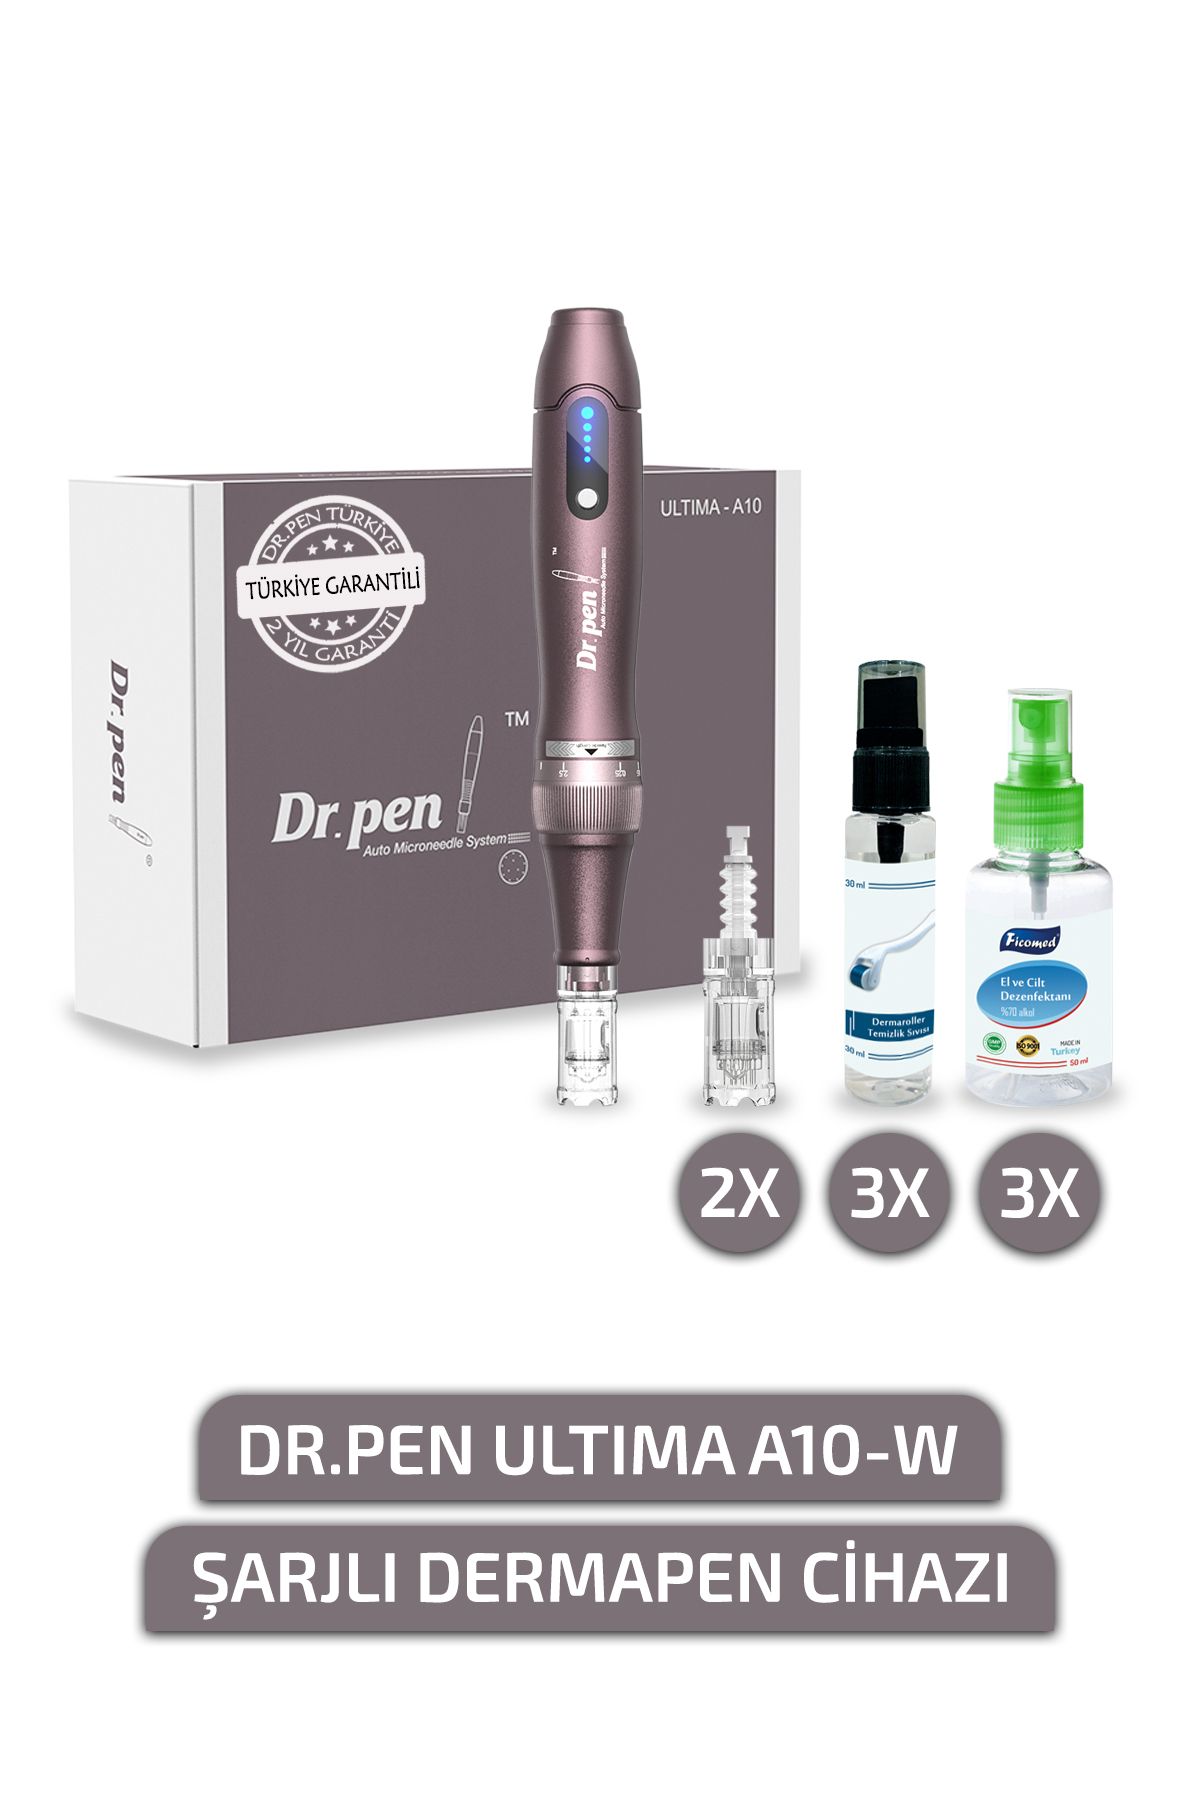 Dr.Pen Ultima A10-w Şarjlı Dermapen Cihazı (2 YIL TÜRKİYE GARANTİLİ) Derma Pen Kalıcı Makyaj Dermaroller